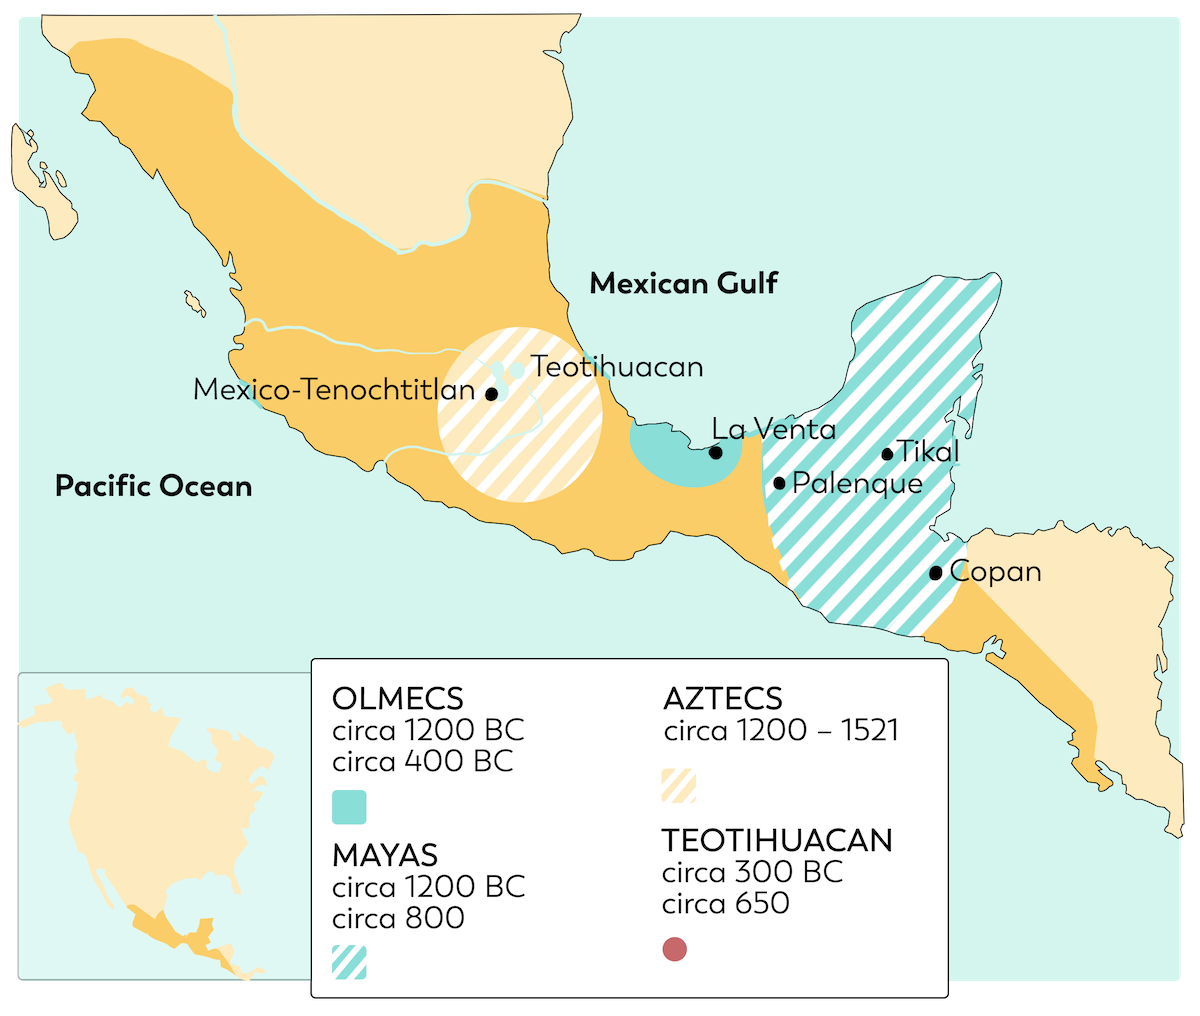 maya olmec map